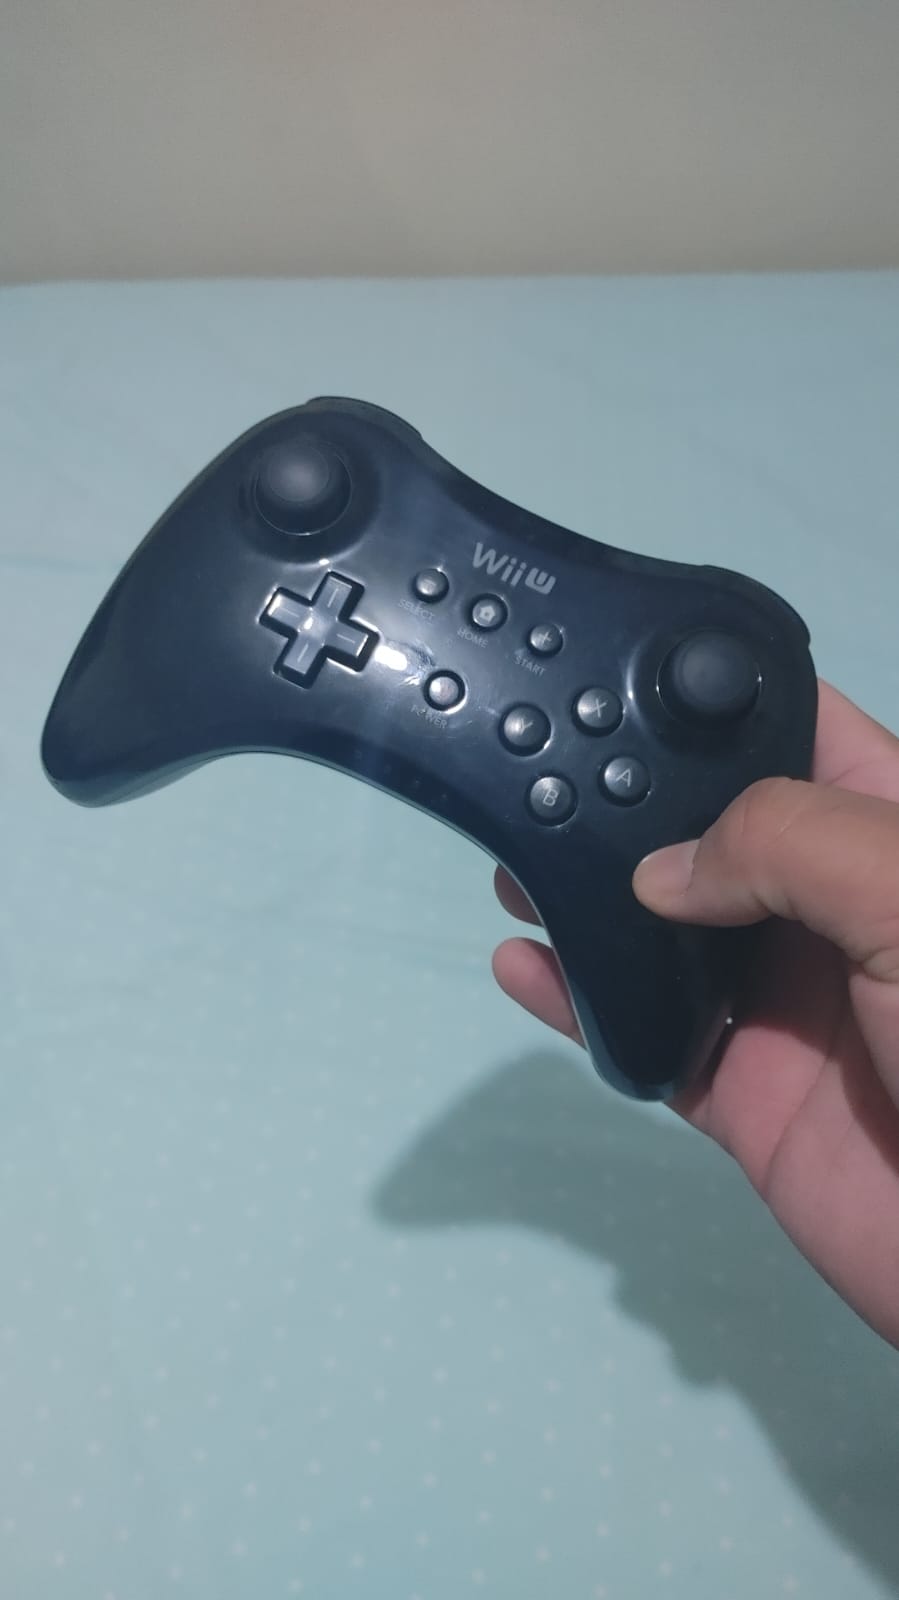 Control Pro Original de Wii U barato con DRIFT Foto 7204458-1.jpg